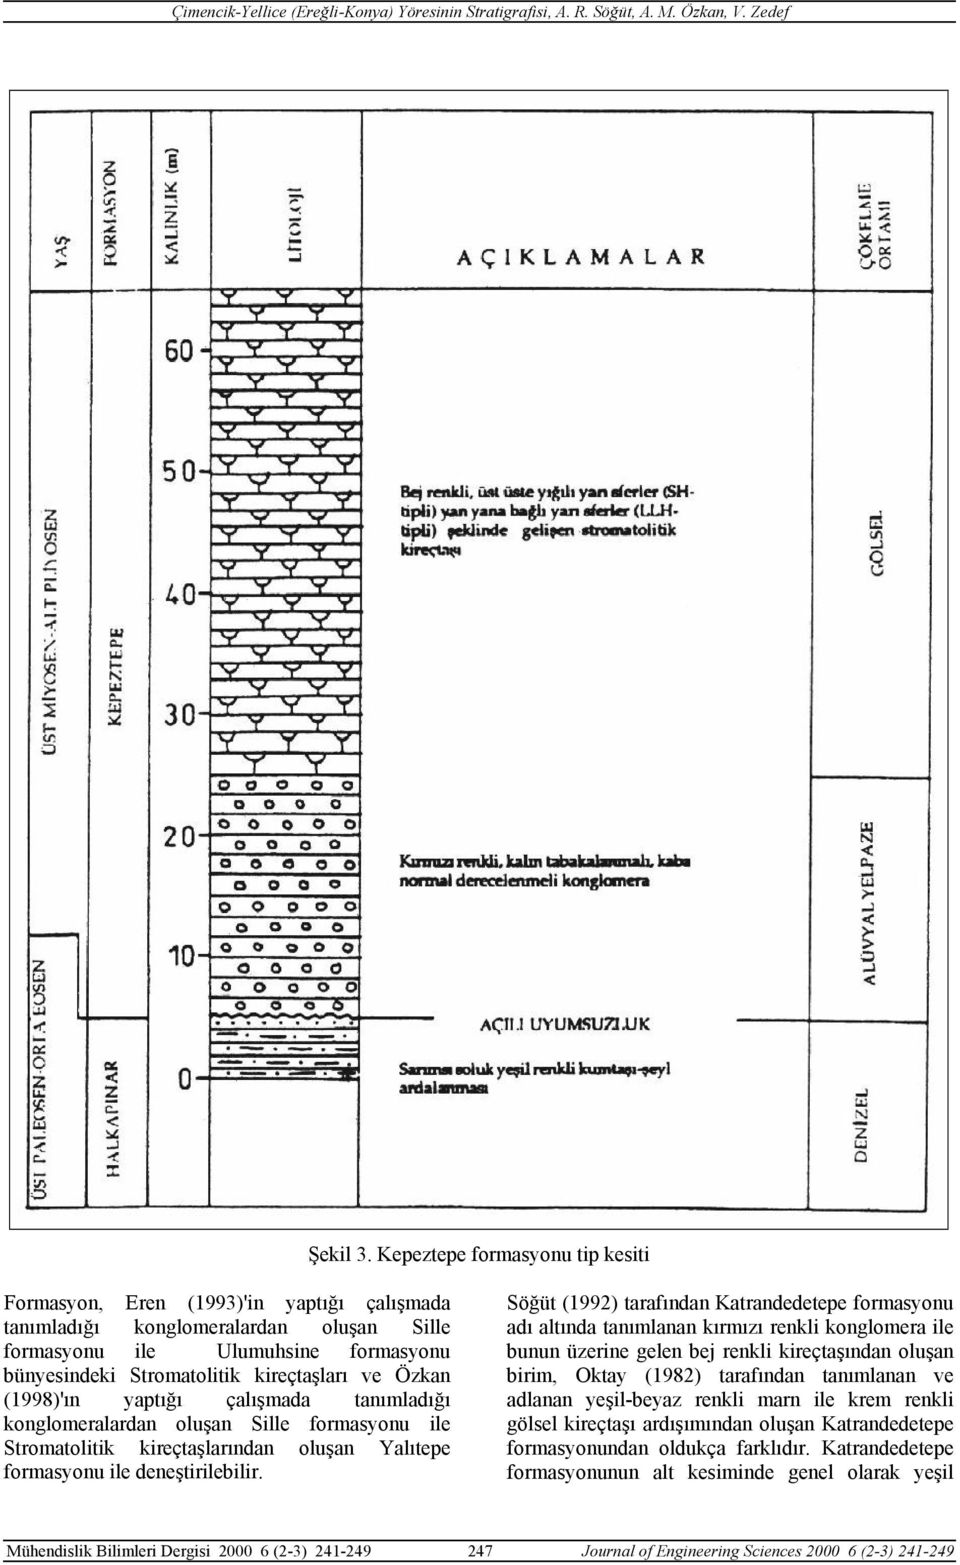 Özkan (1998)'ın yaptığı çalışmada tanımladığı konglomeralardan oluşan Sille formasyonu ile Stromatolitik kireçtaşlarından oluşan Yalıtepe formasyonu ile deneştirilebilir.